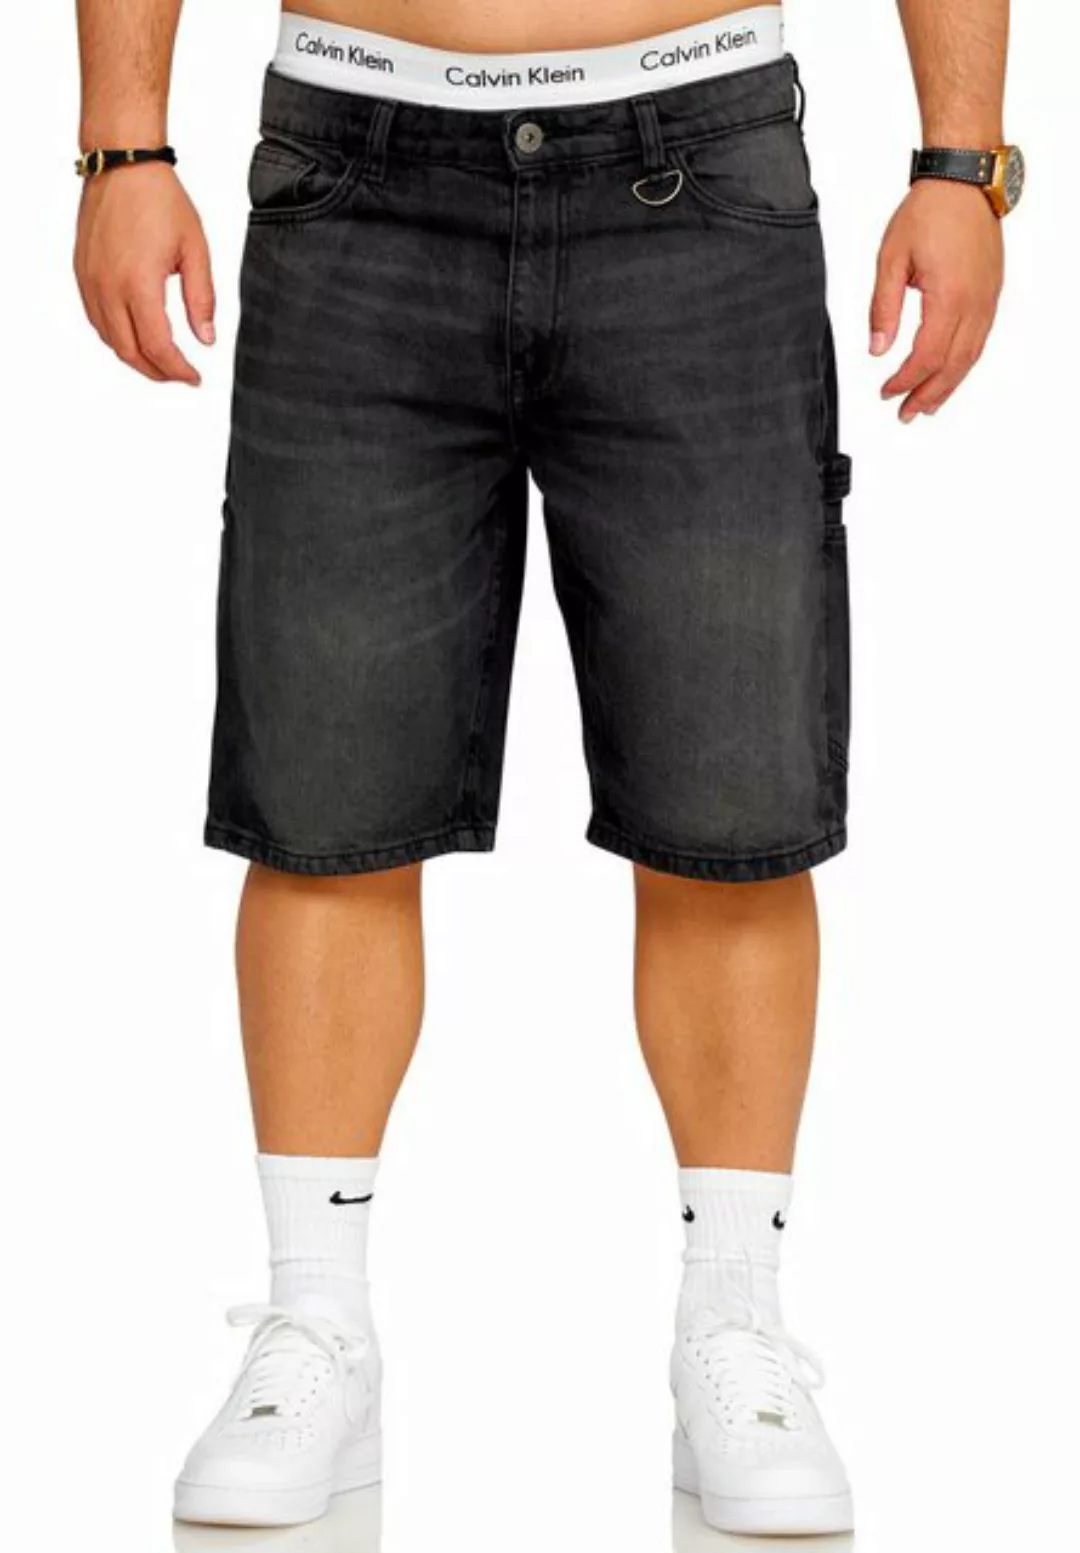 SOULSTAR Jeansshorts S2SAAR Herren Kurze Hose Carpenter Jeans Shorts Bermud günstig online kaufen